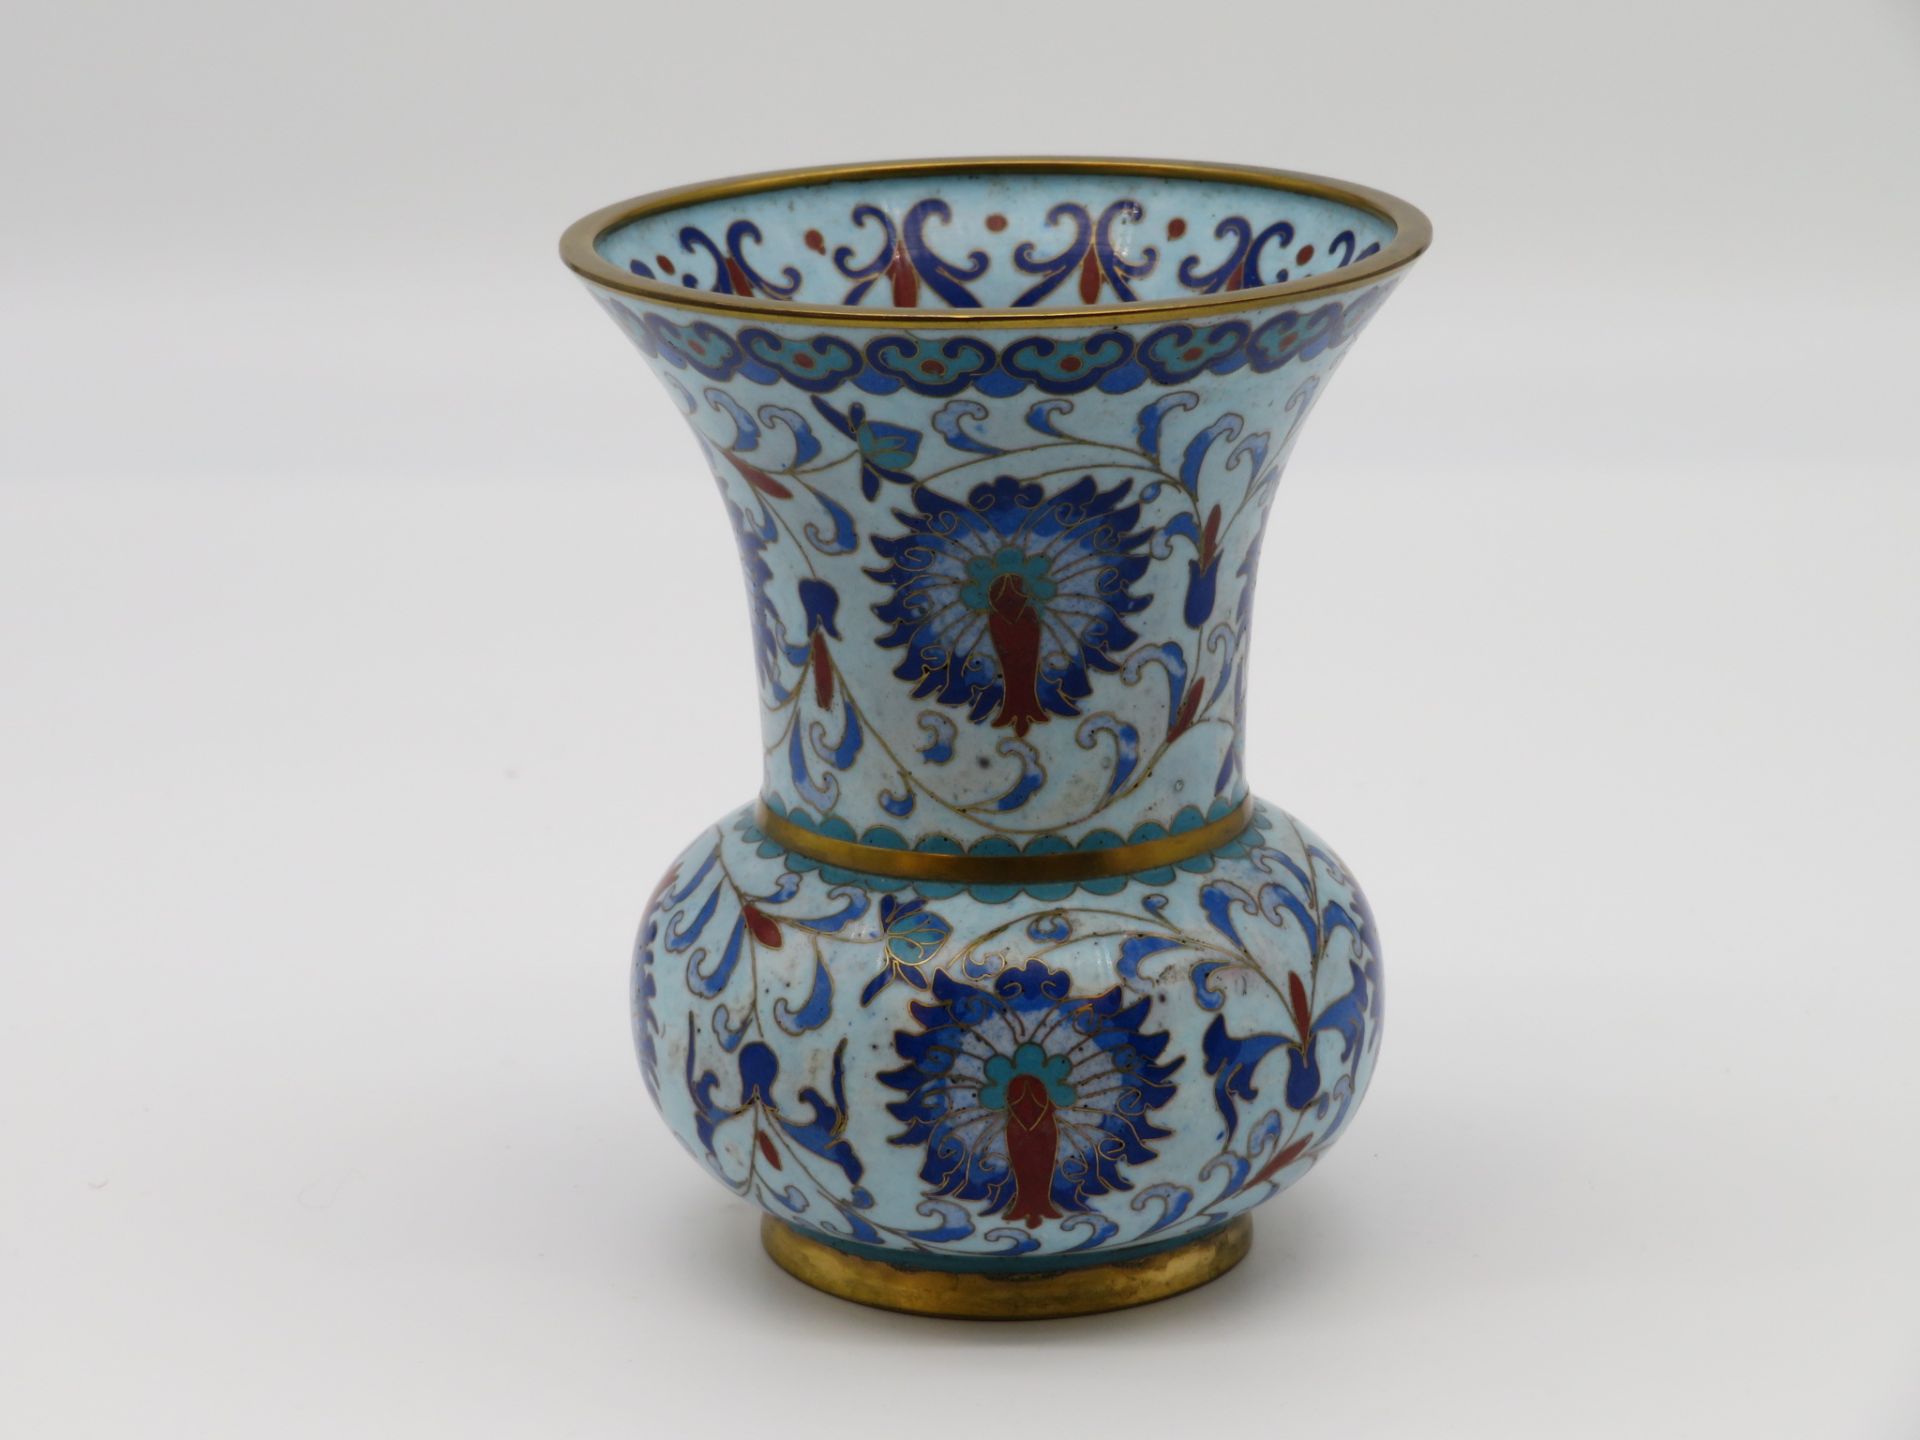 Cloisonné Vase, China, 1. Hälfte 20. Jahrhundert, farbiger Zellenschmelz, h 13 cm, d 10,7 cm.